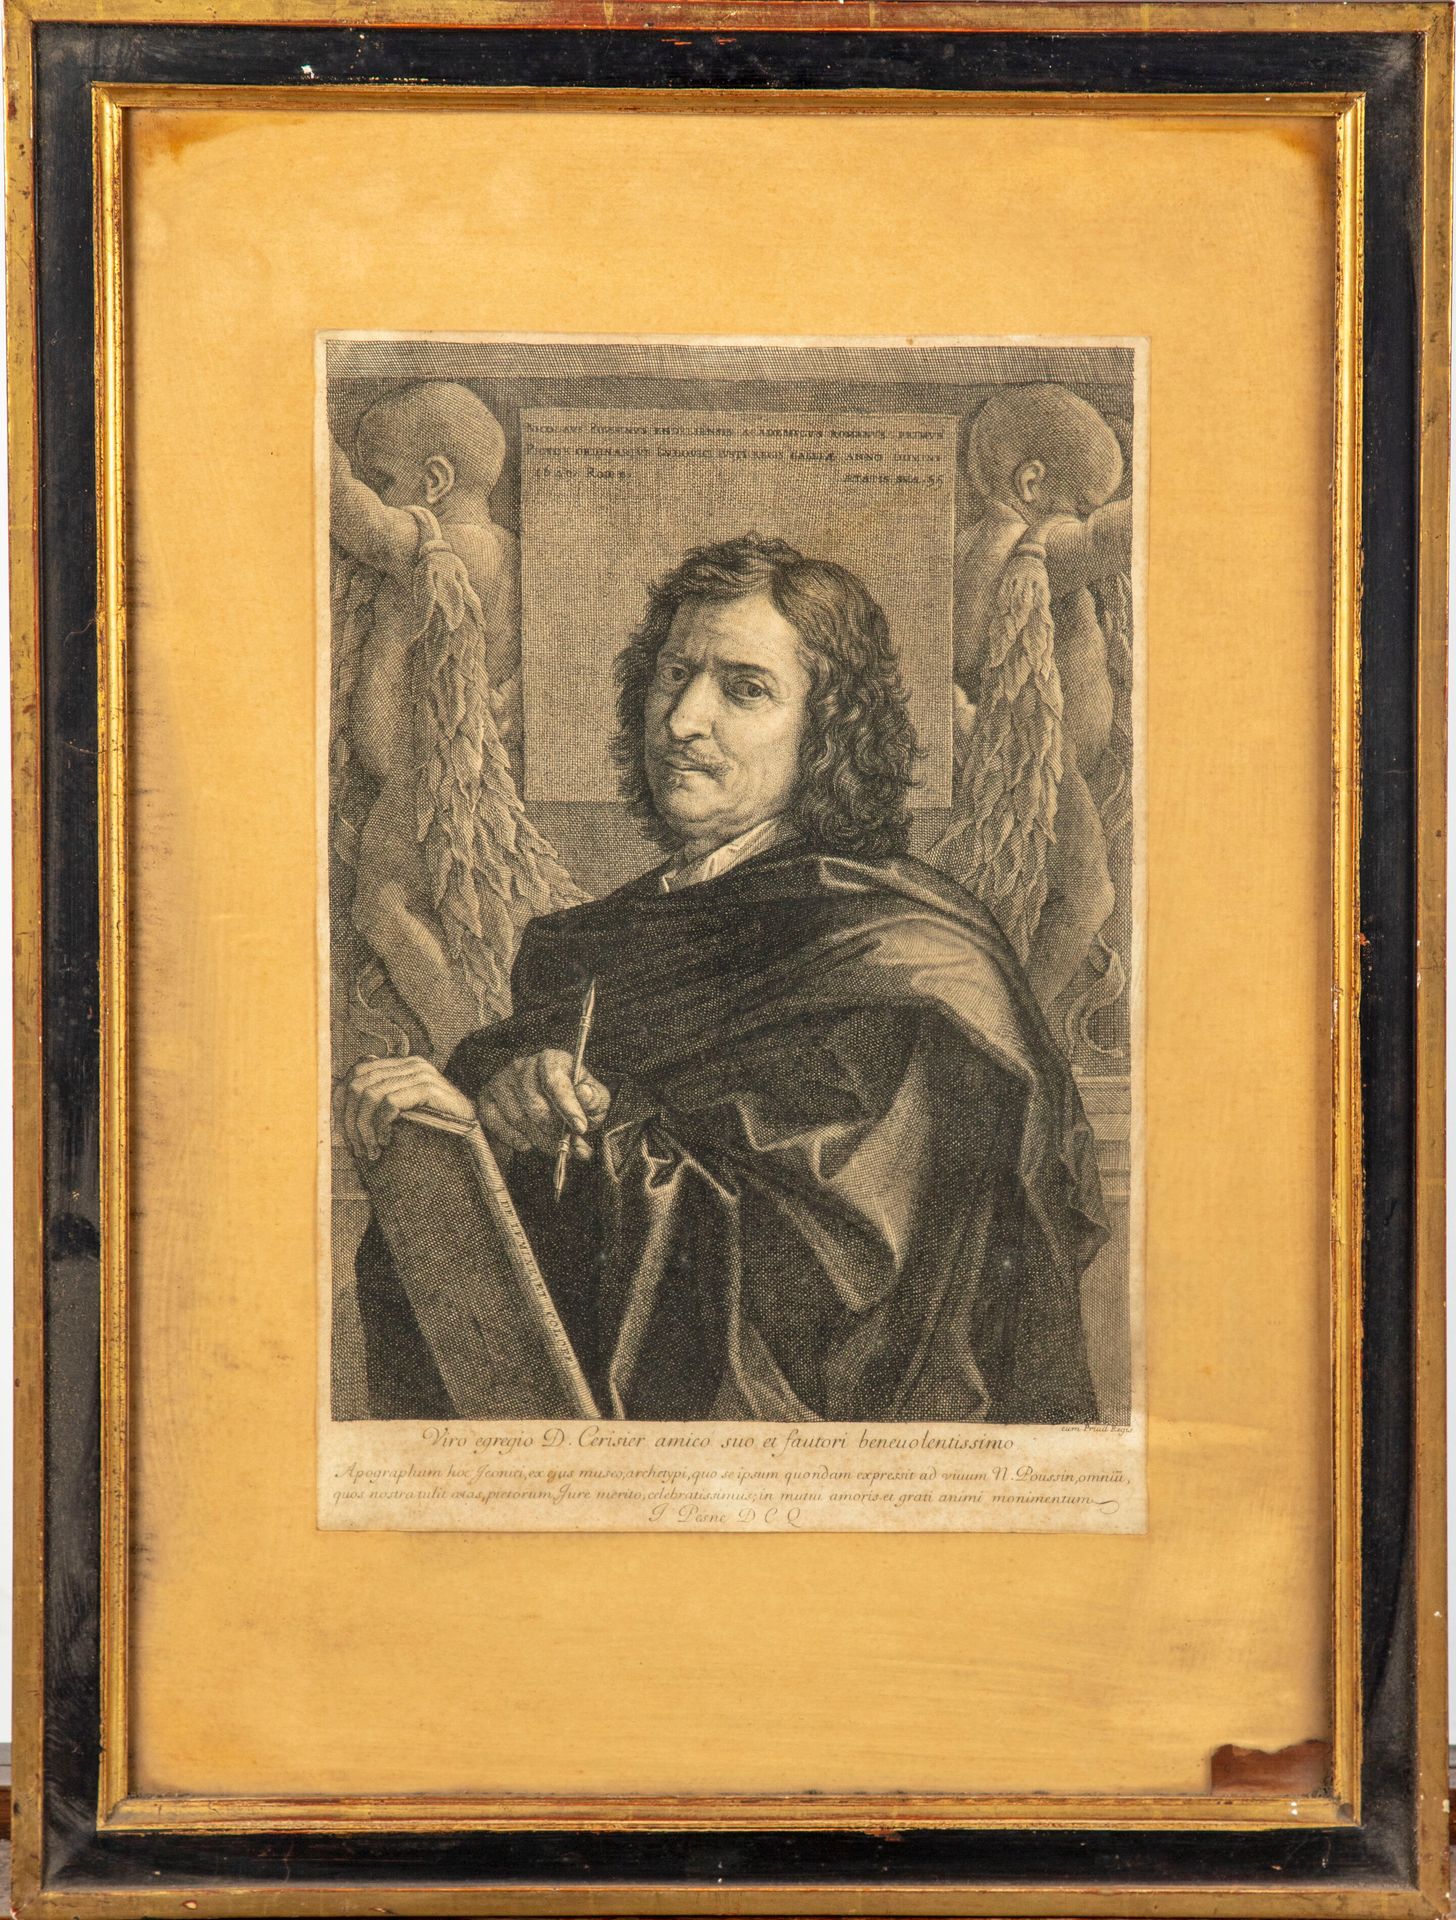 PASNE Jean PESNE (1623 - 1700)

Grabado según el autorretrato de Nicolas POUSSIN&hellip;